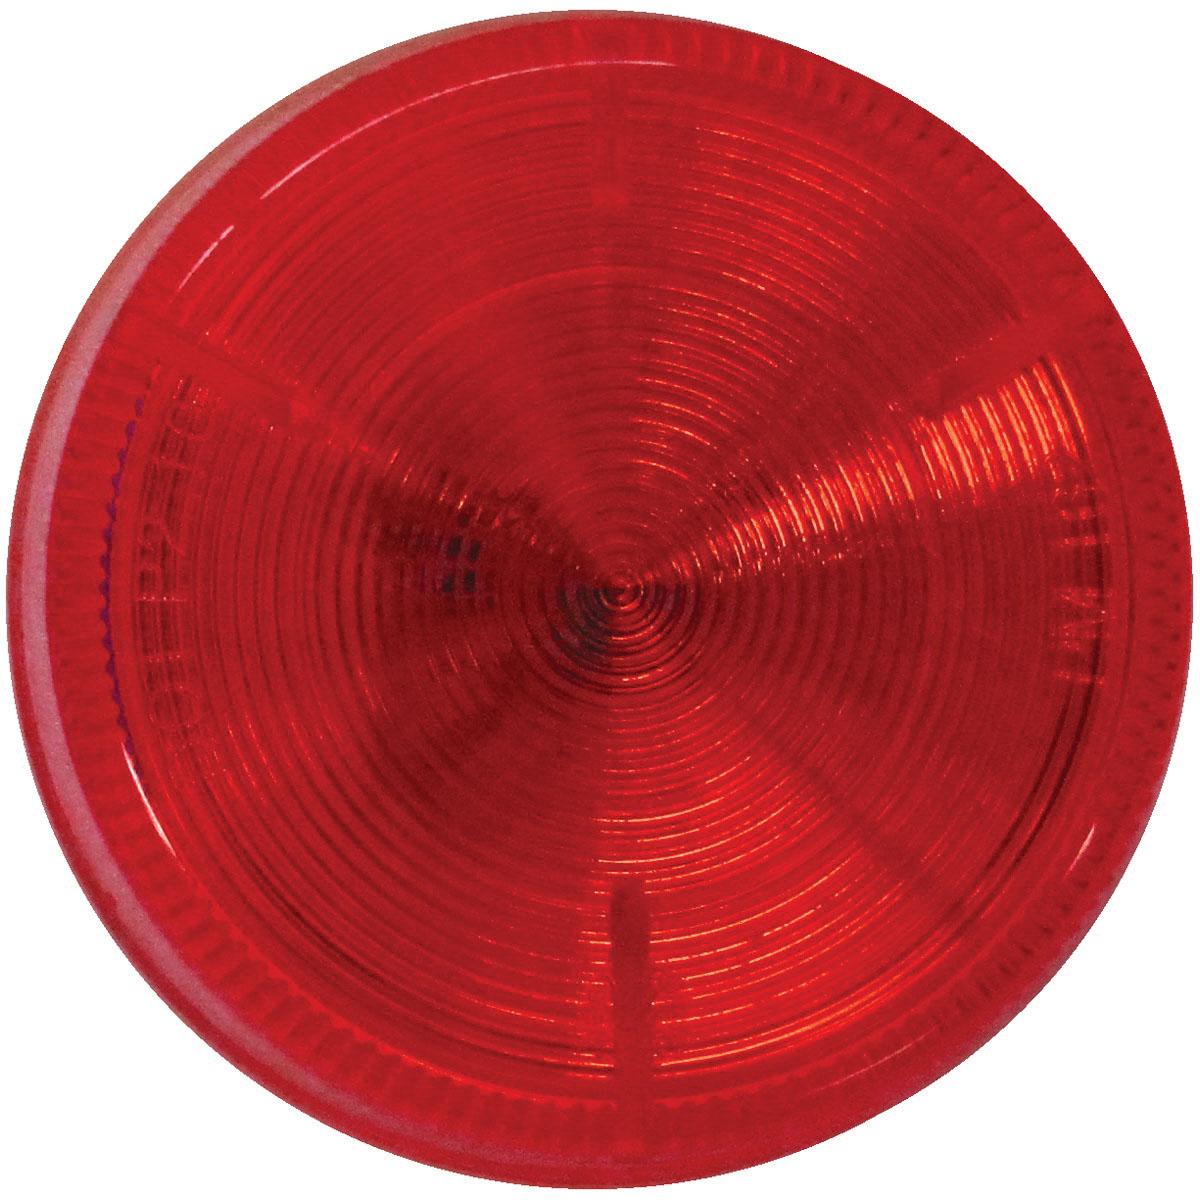 Piranha V162KR Clearance/Side Marker Light, LED Lamp, Red Housing